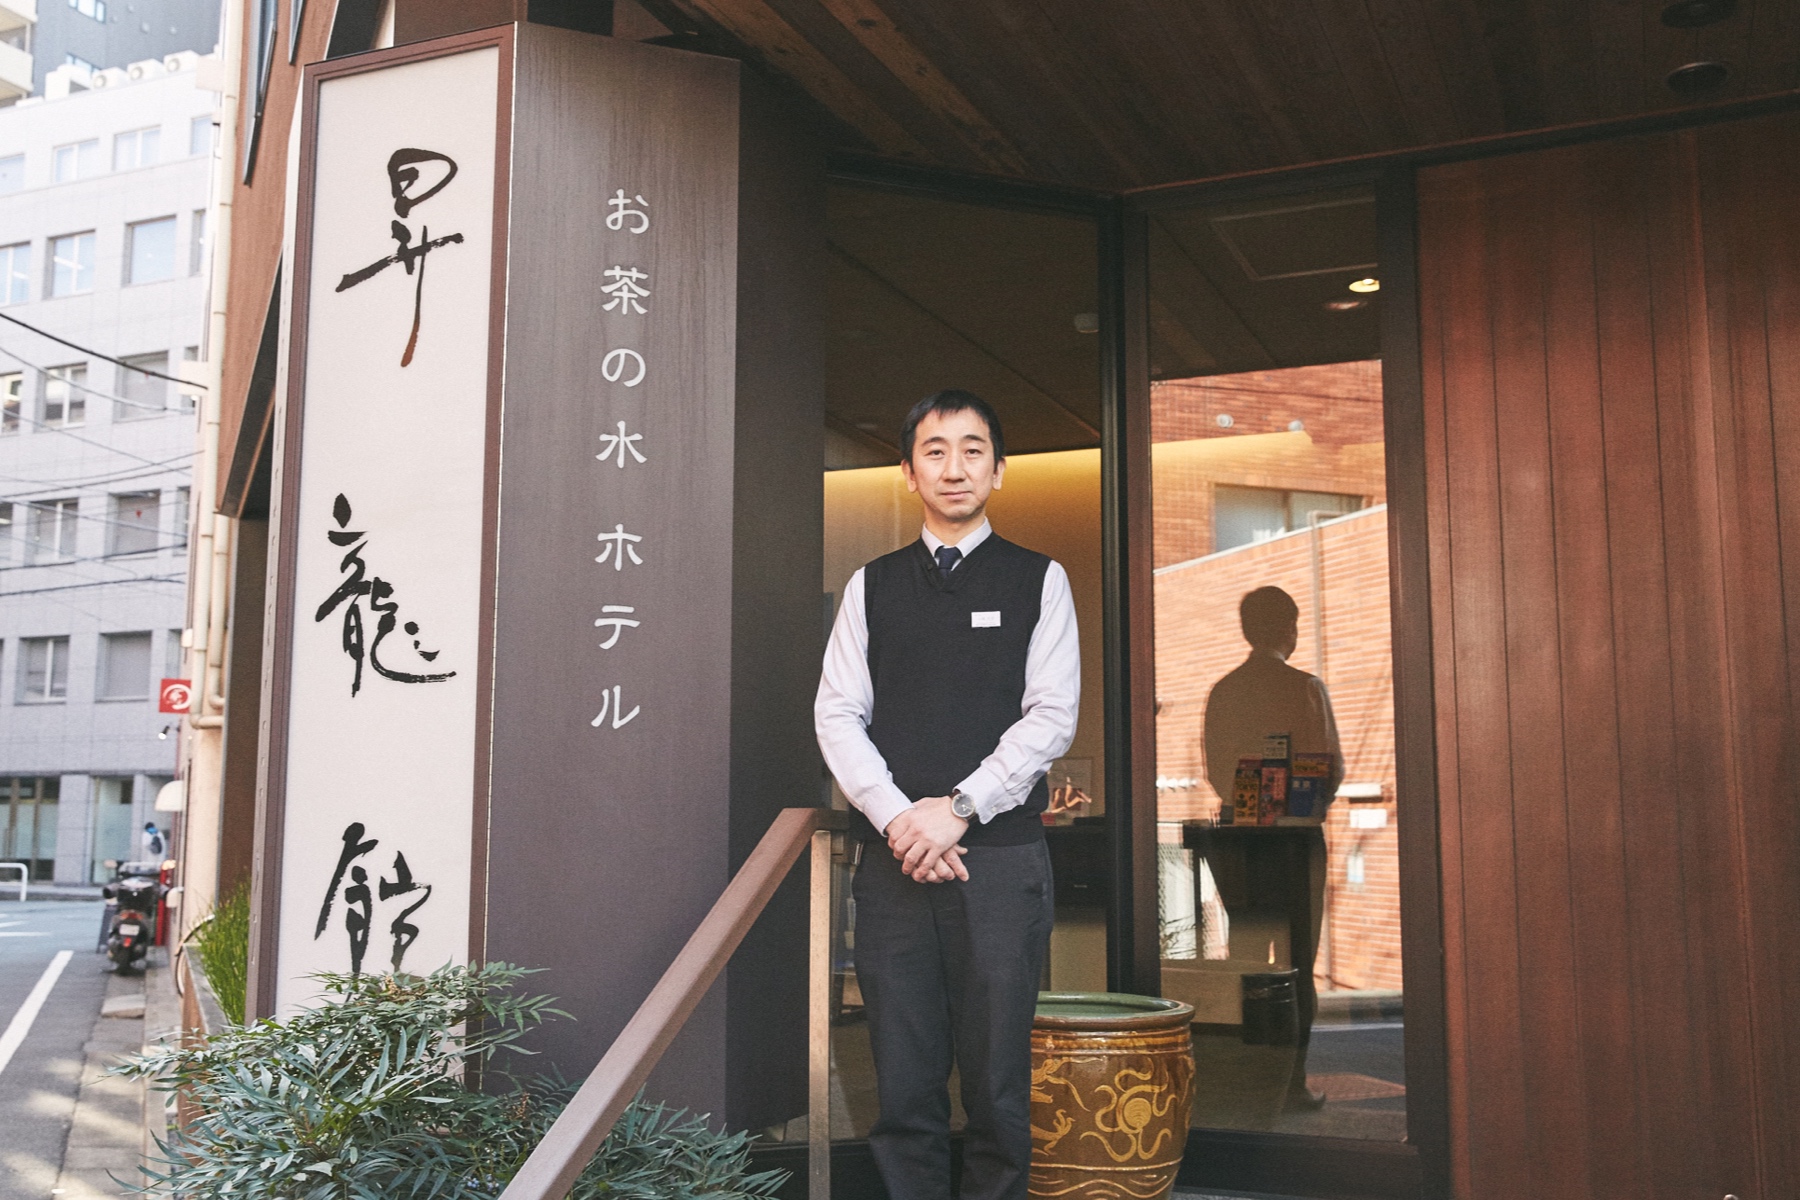 The owner at Shoryukan, Mr. Kobayashi